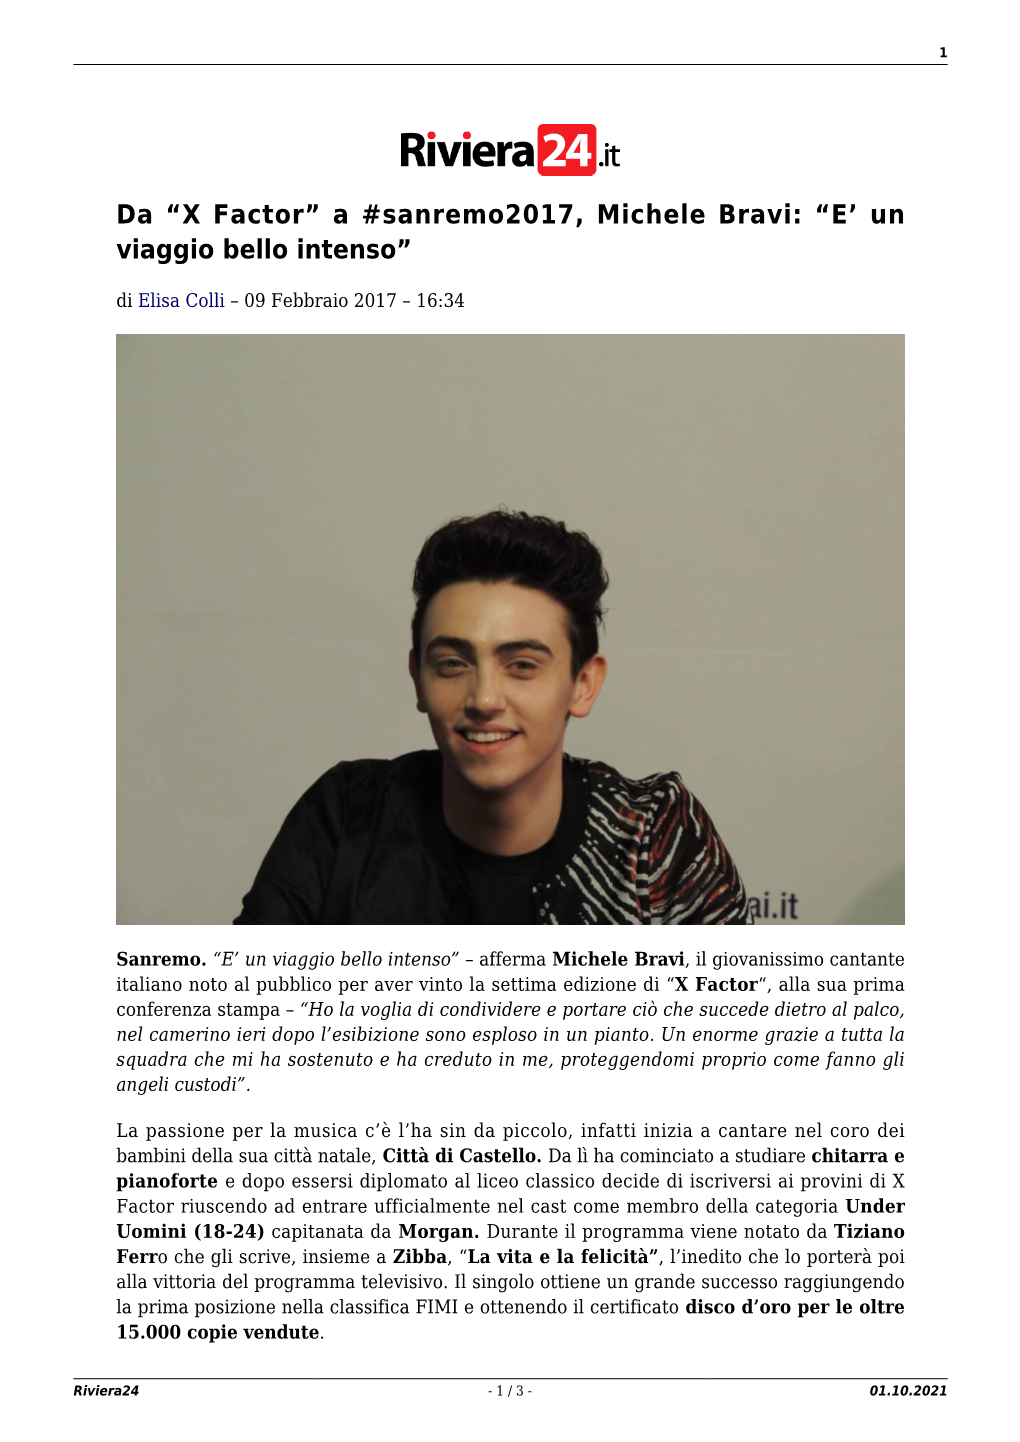 Da “X Factor” a #Sanremo2017, Michele Bravi: “E' Un